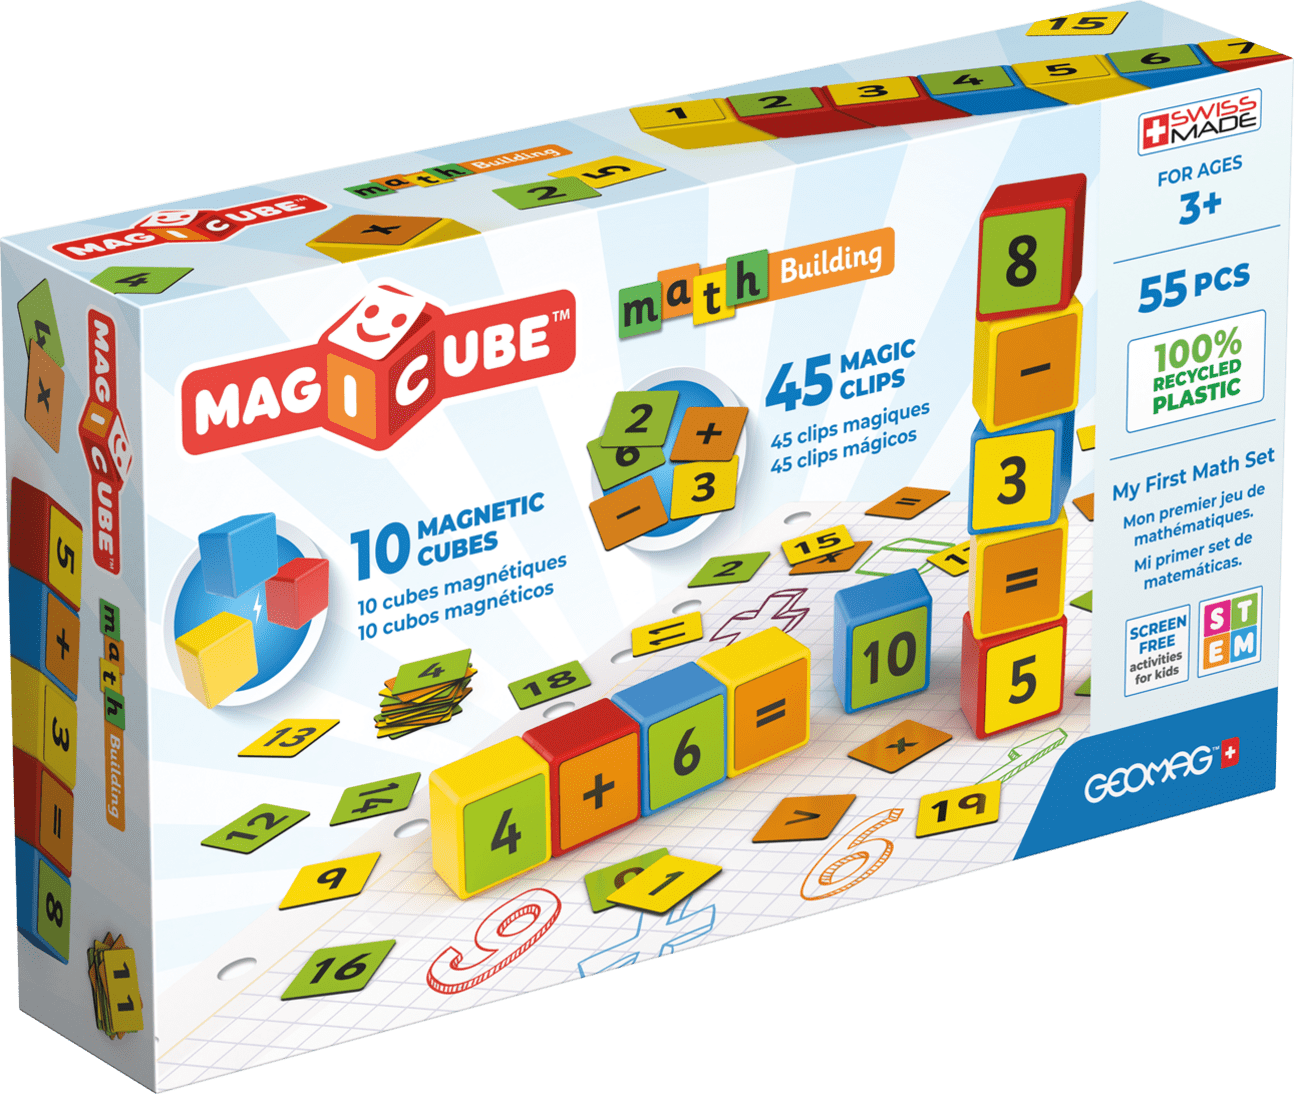 Geomag Magicube Matematika recyklováno 55 kusů